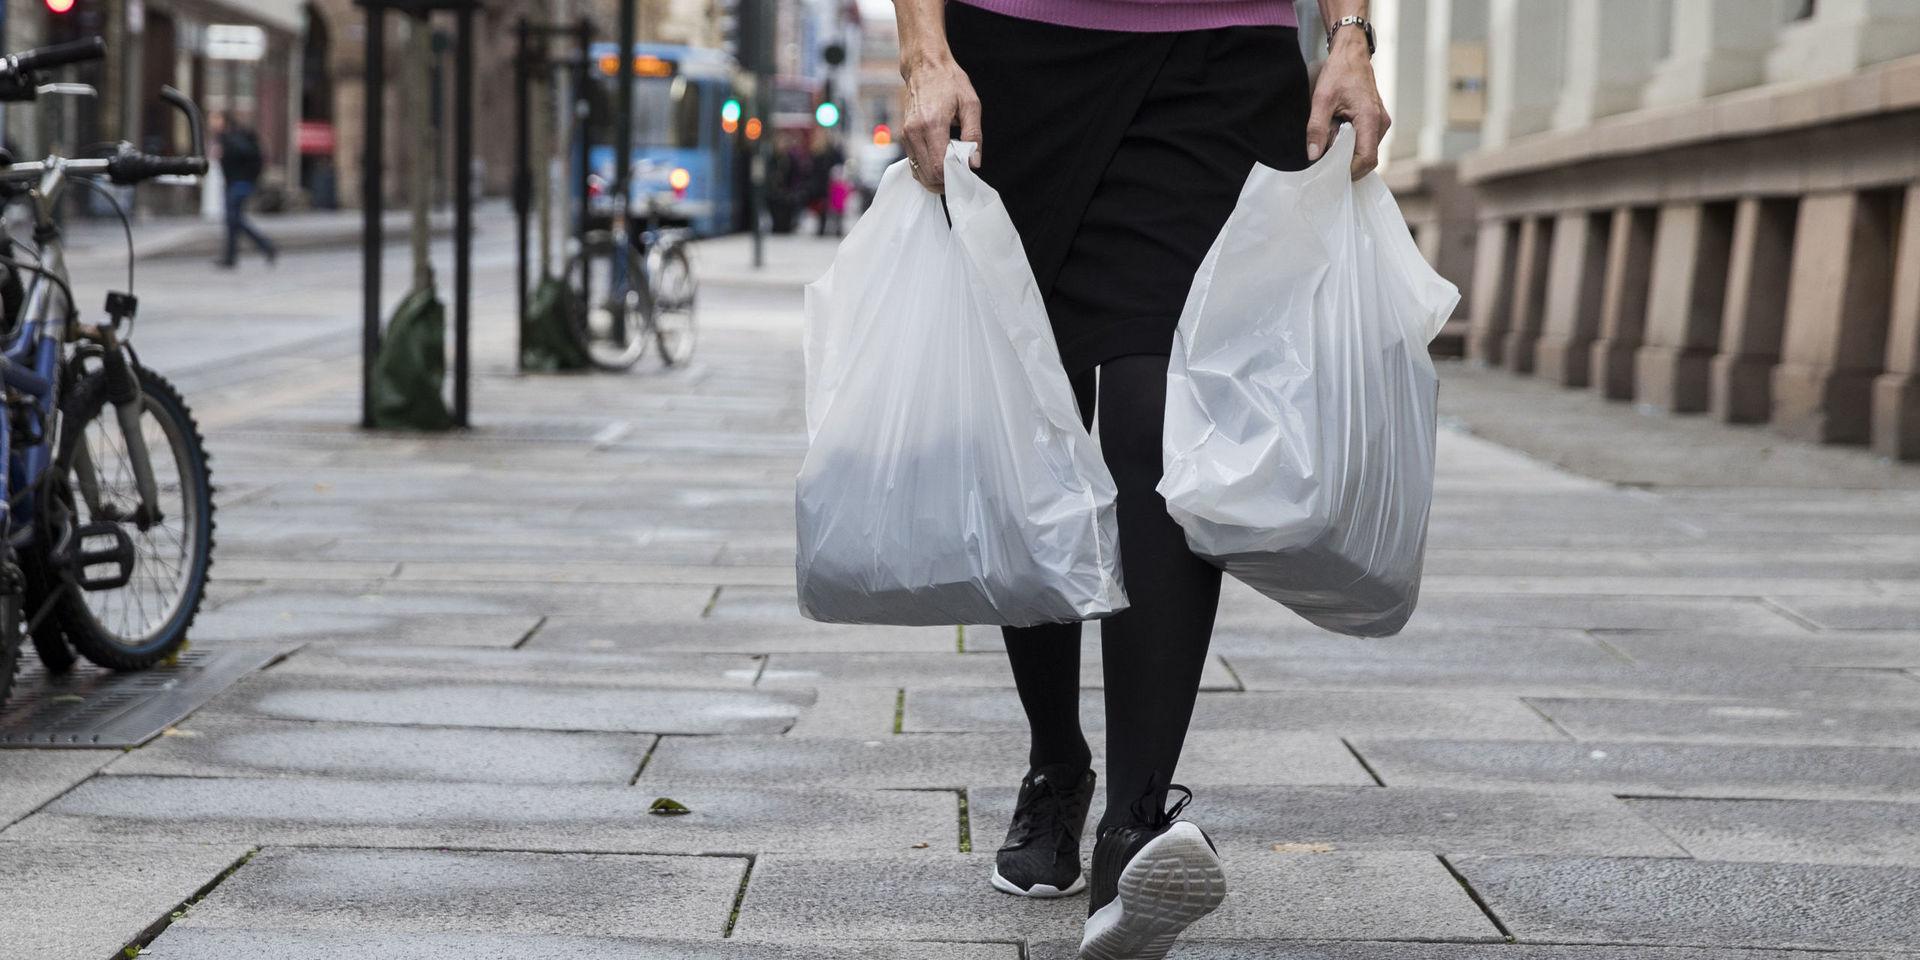 Om man nu inte vill ha plastpåsar för miljöns skull, så borde man självklart ha infört ett förbud istället. 